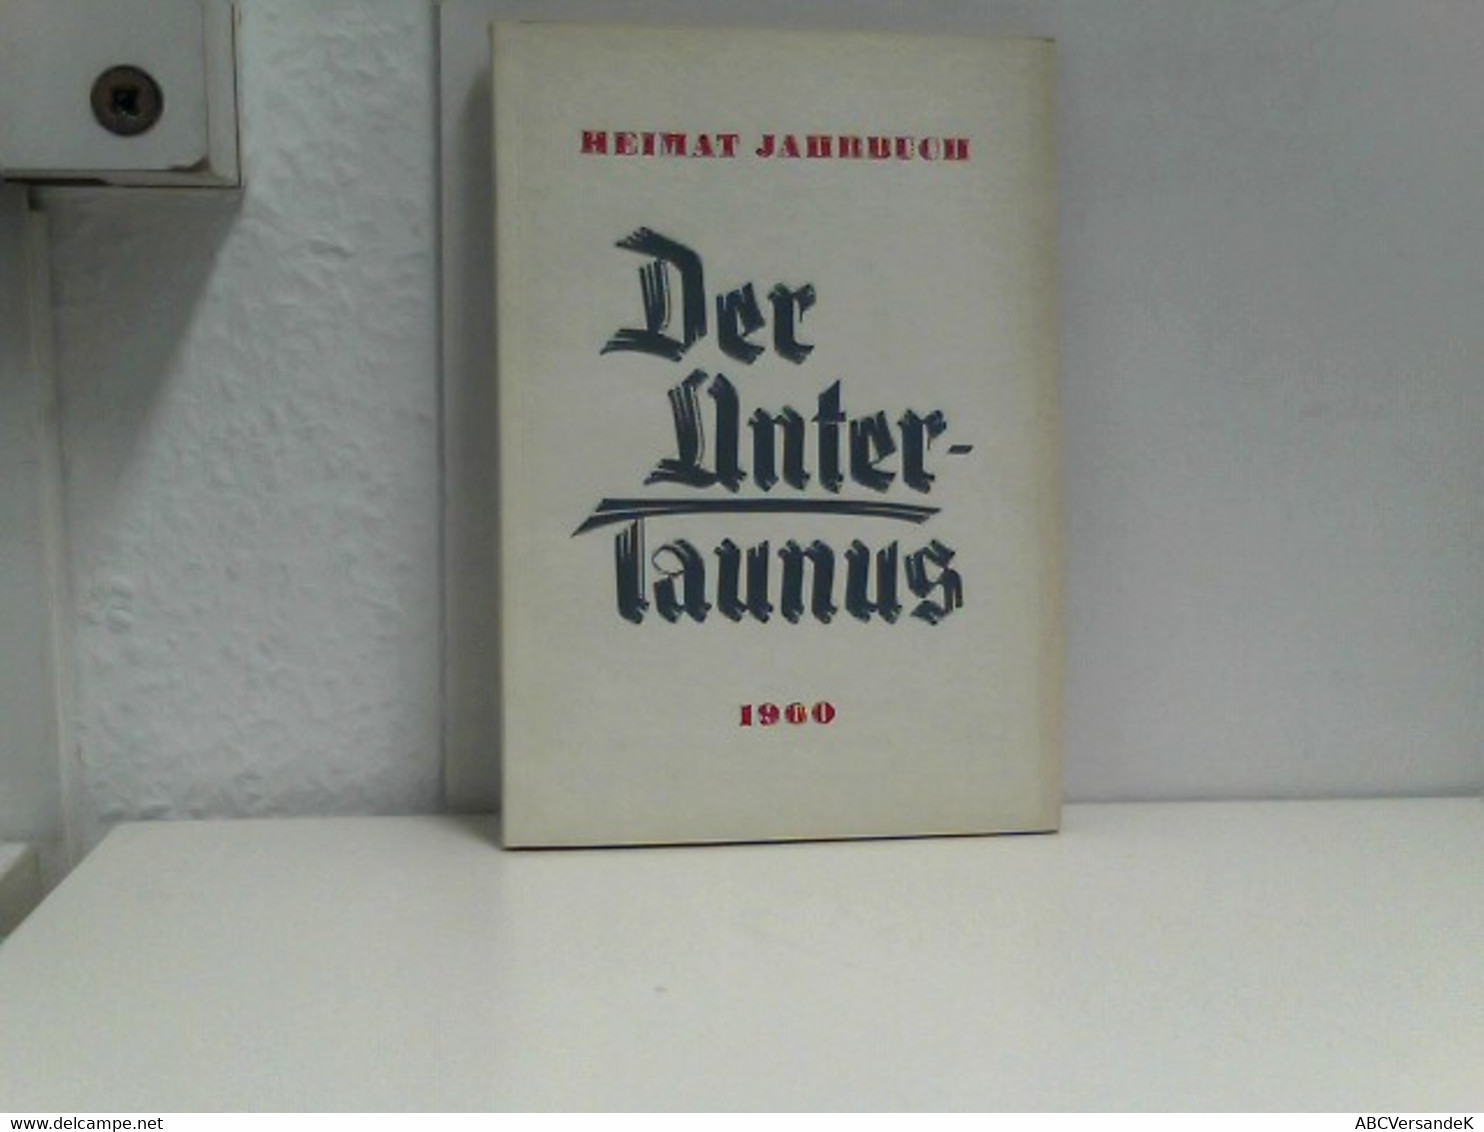 Heimat  Jahrbuch Der Untertaunus 1960 - Hesse